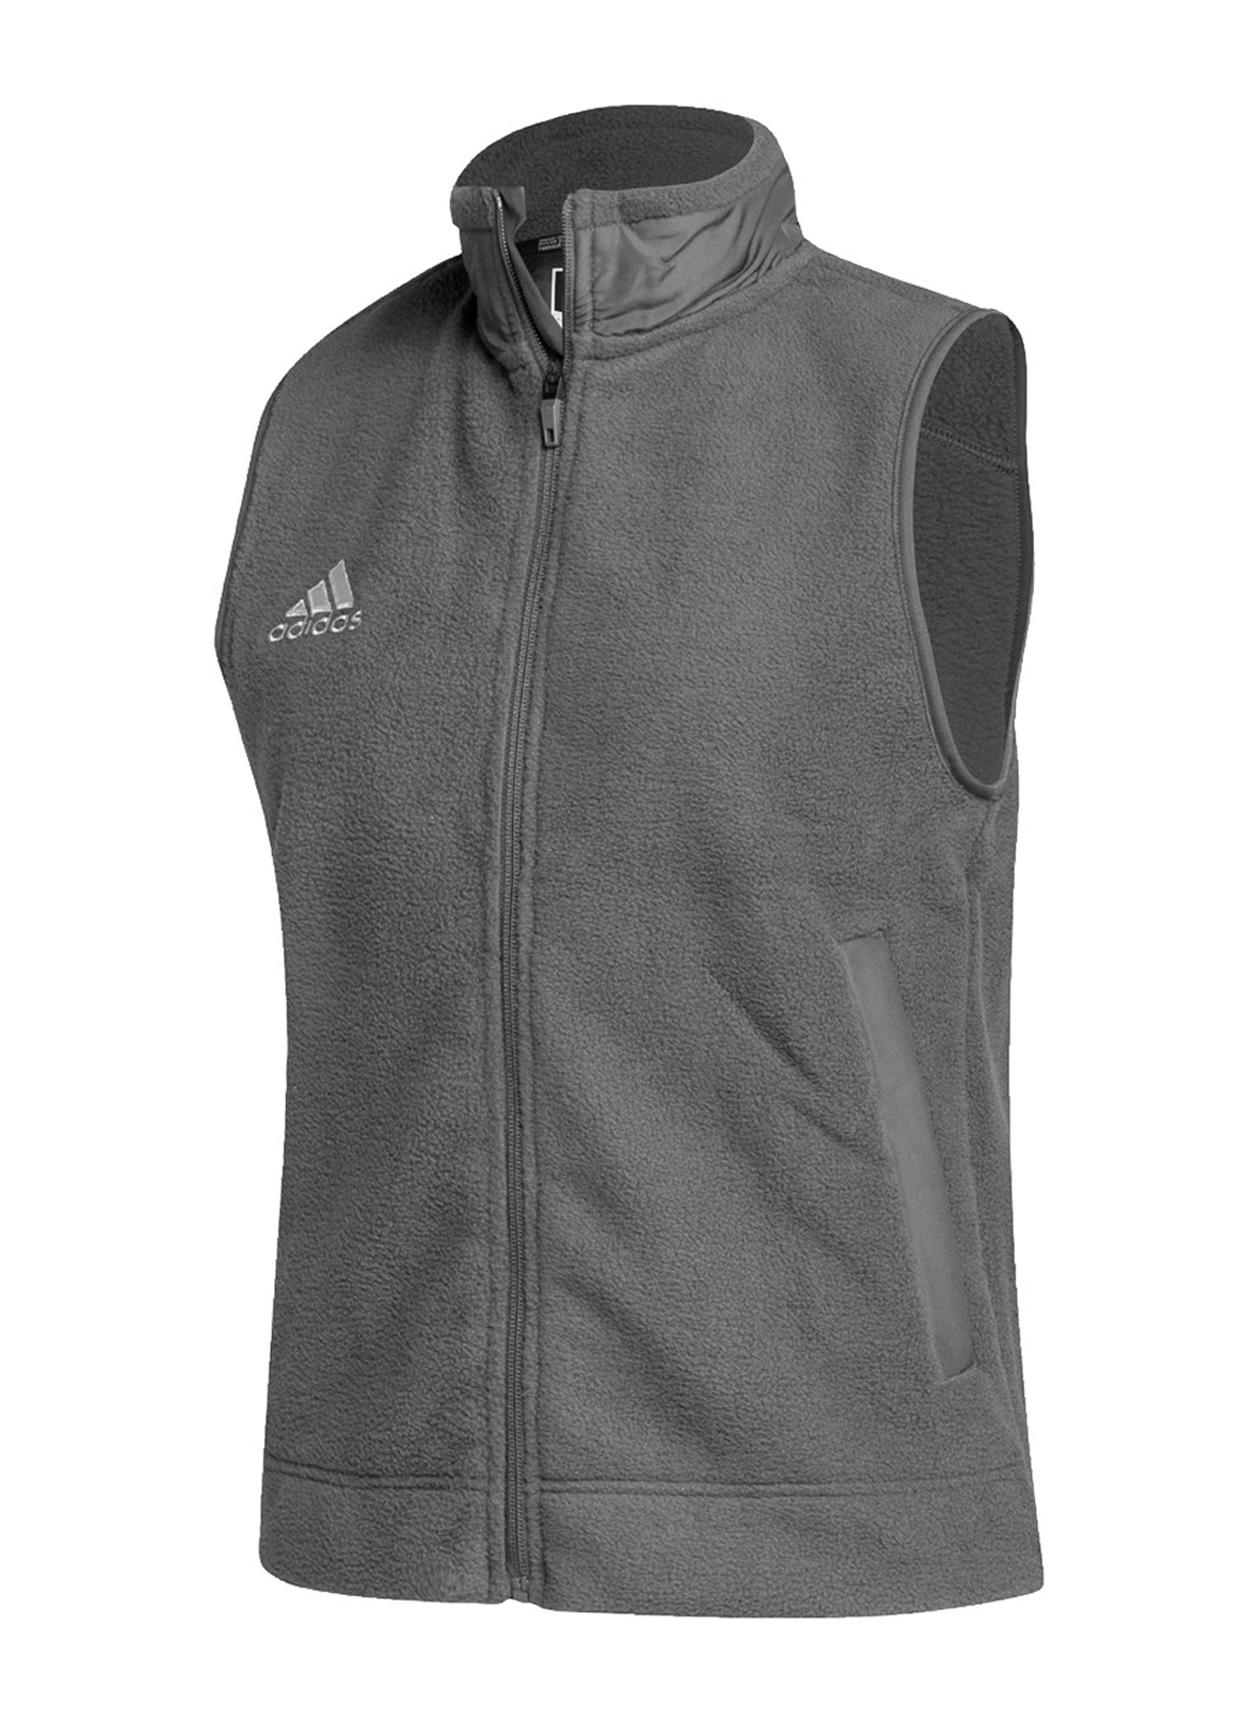 Adidas AD235 - Women's Stadium Vest